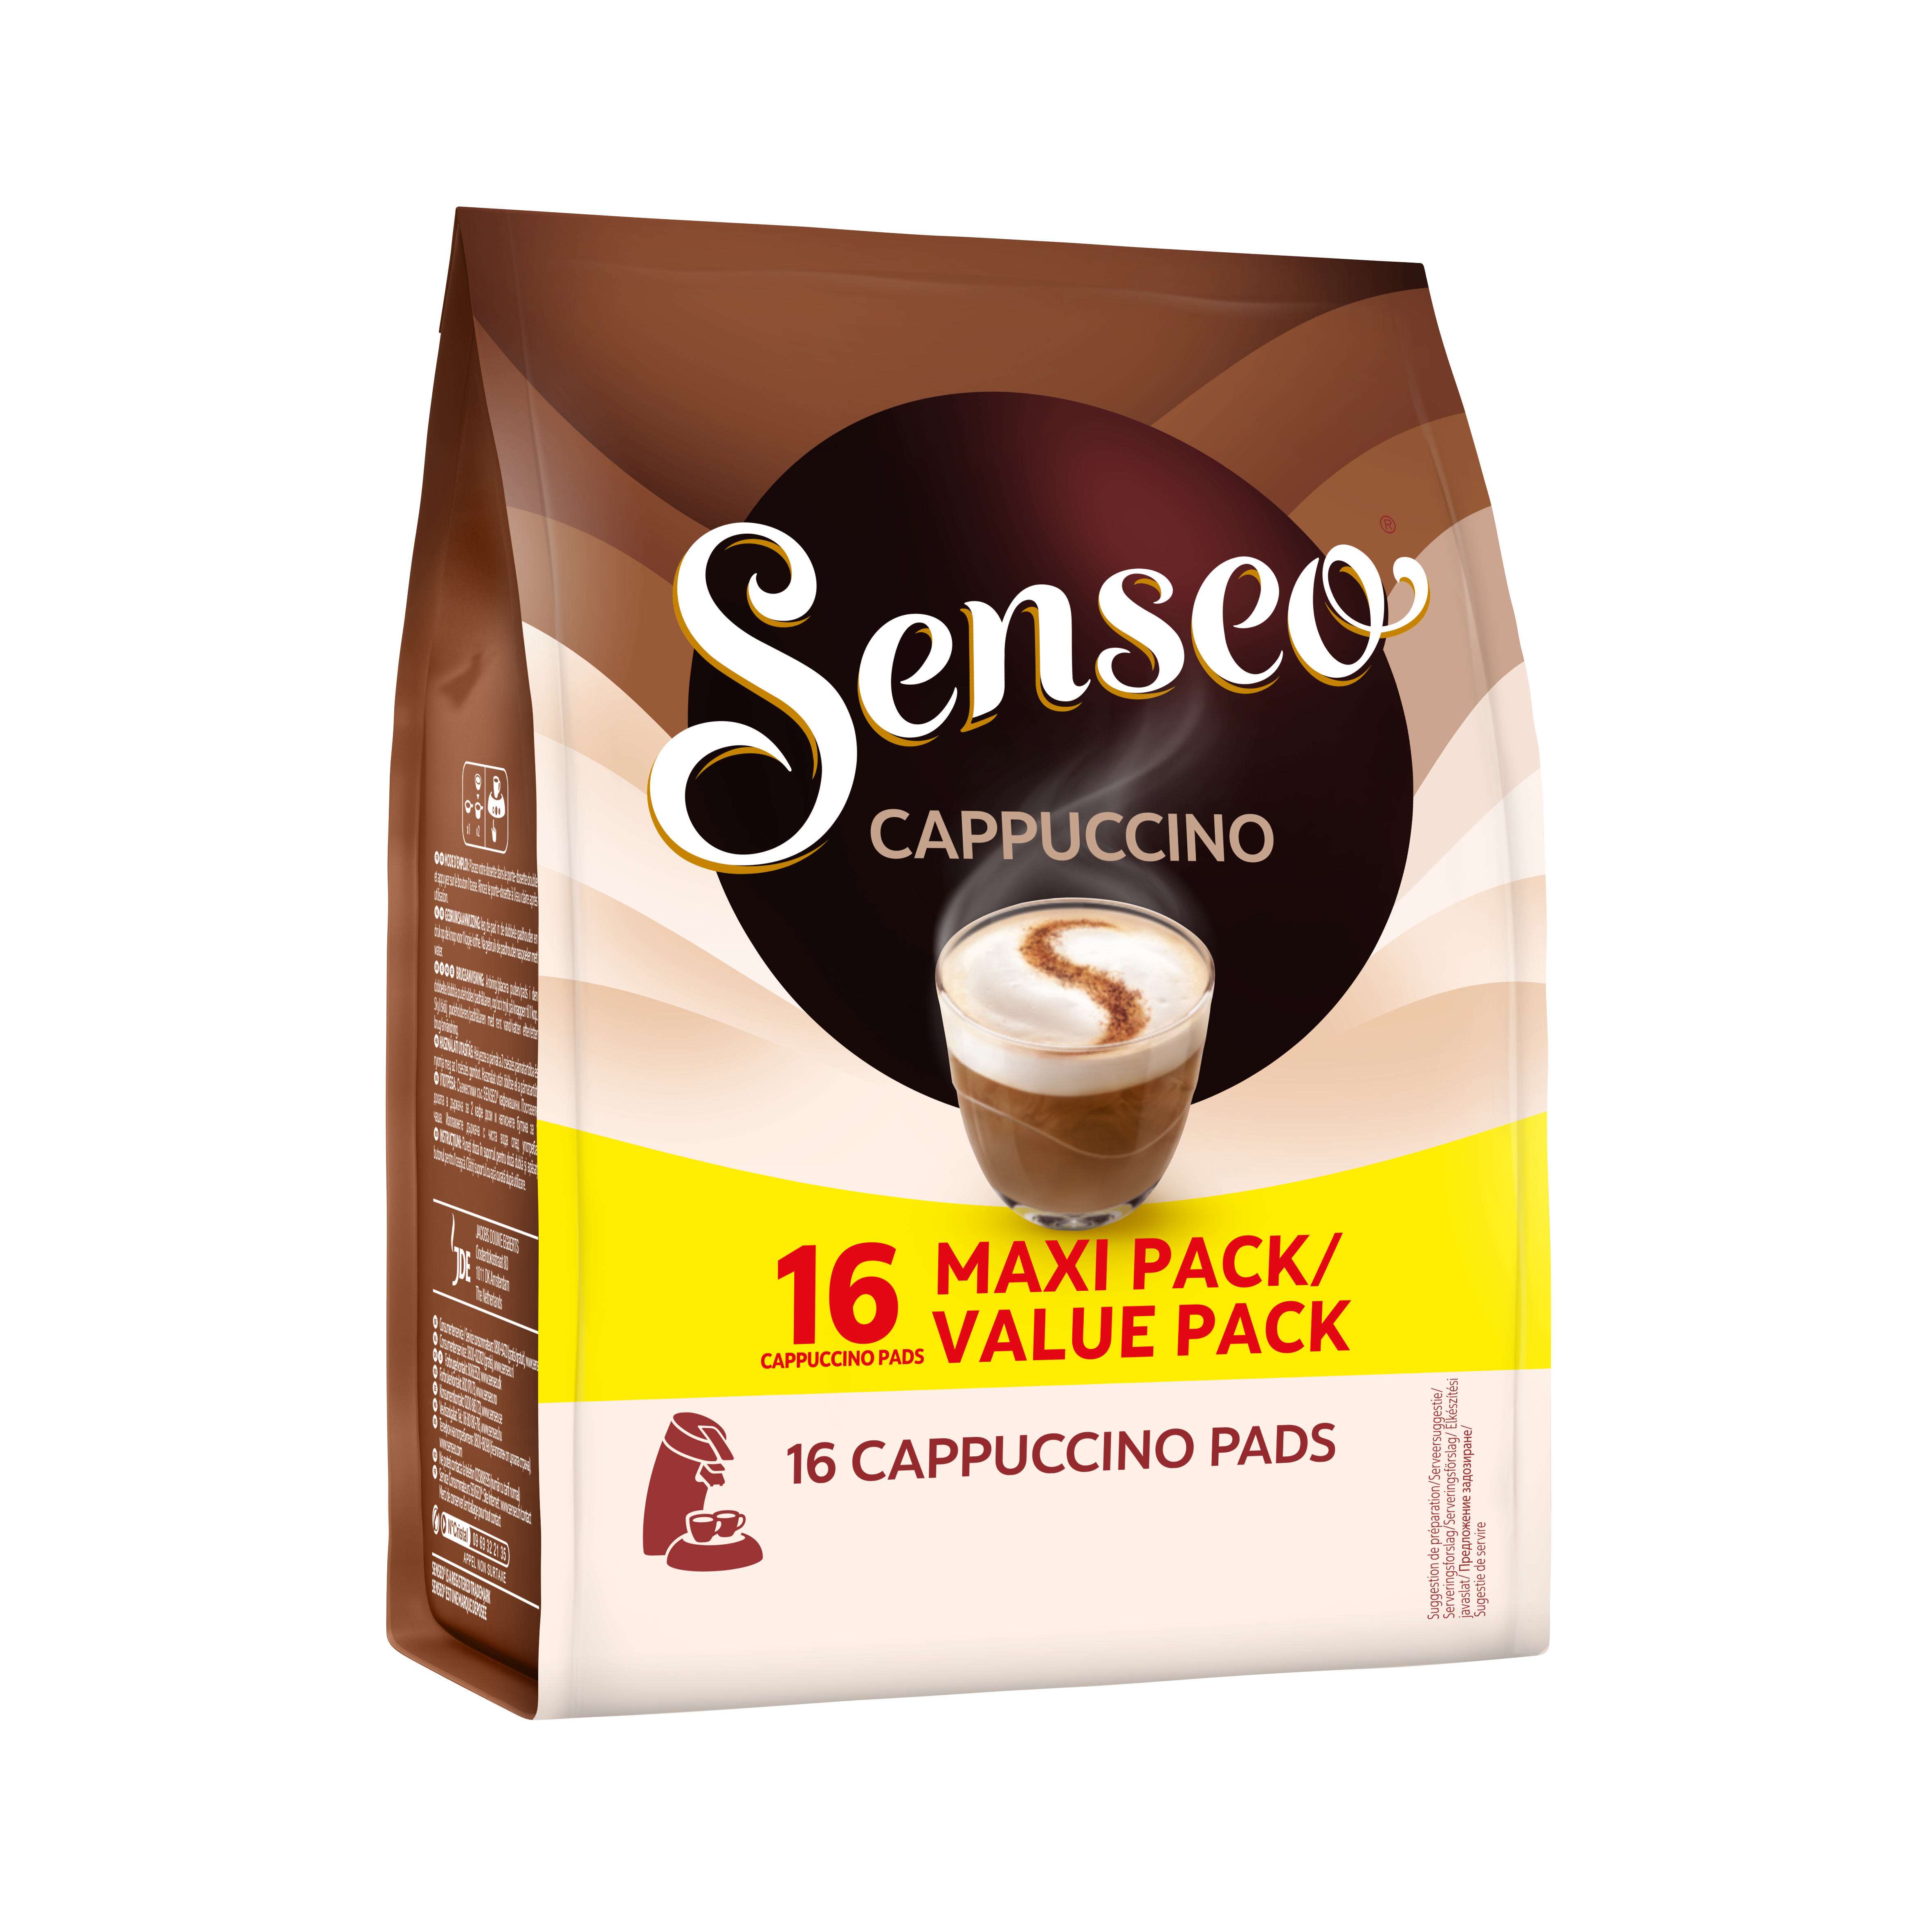 Trop bon et pas trop sucré #senseo #cappuccino #caramel #cafe #abonnet